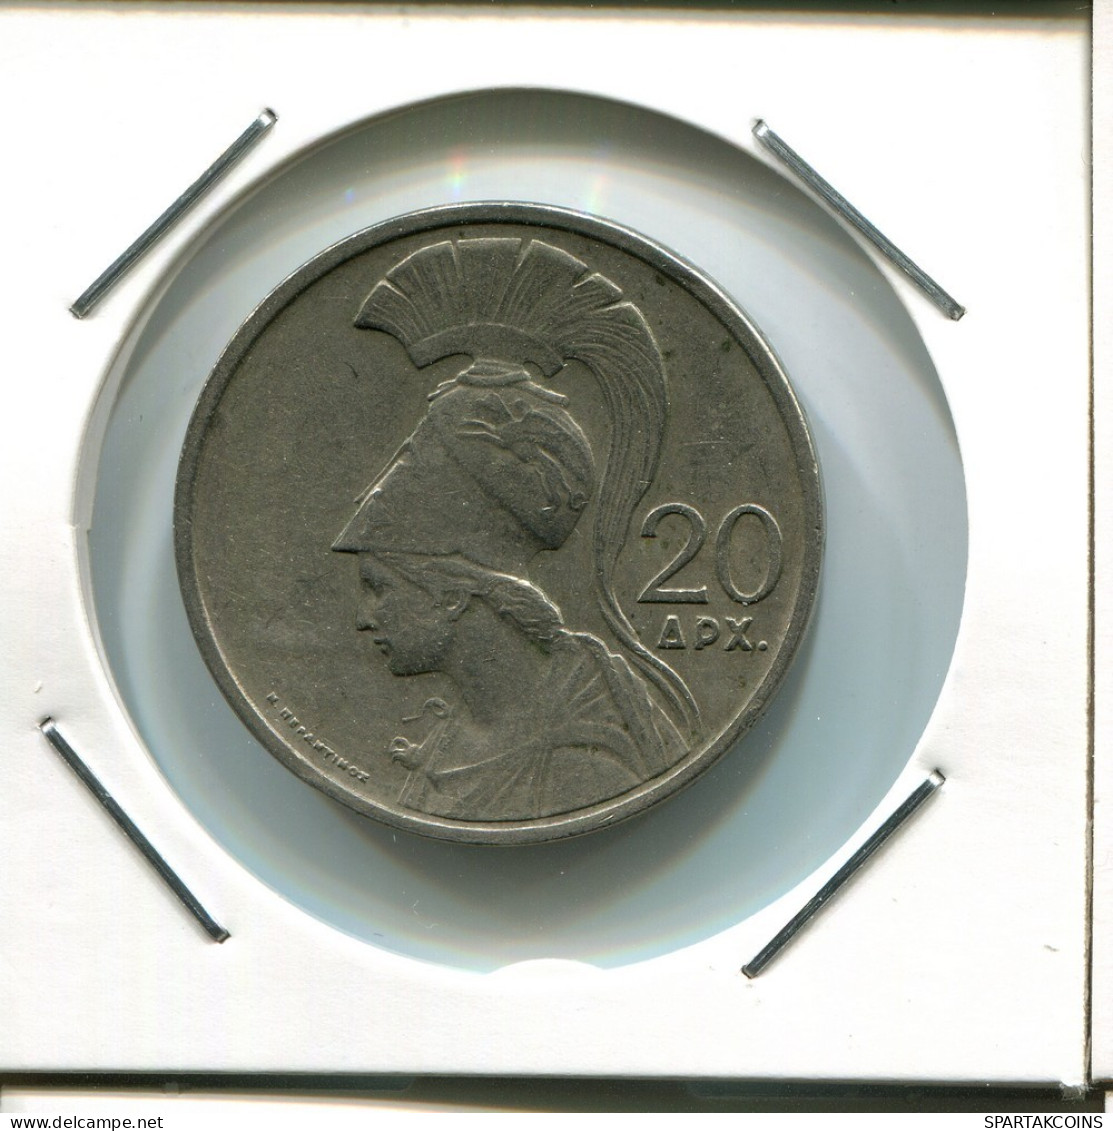 20 DRACHME 1973 GREECE Coin #AR556.U.A - Griechenland